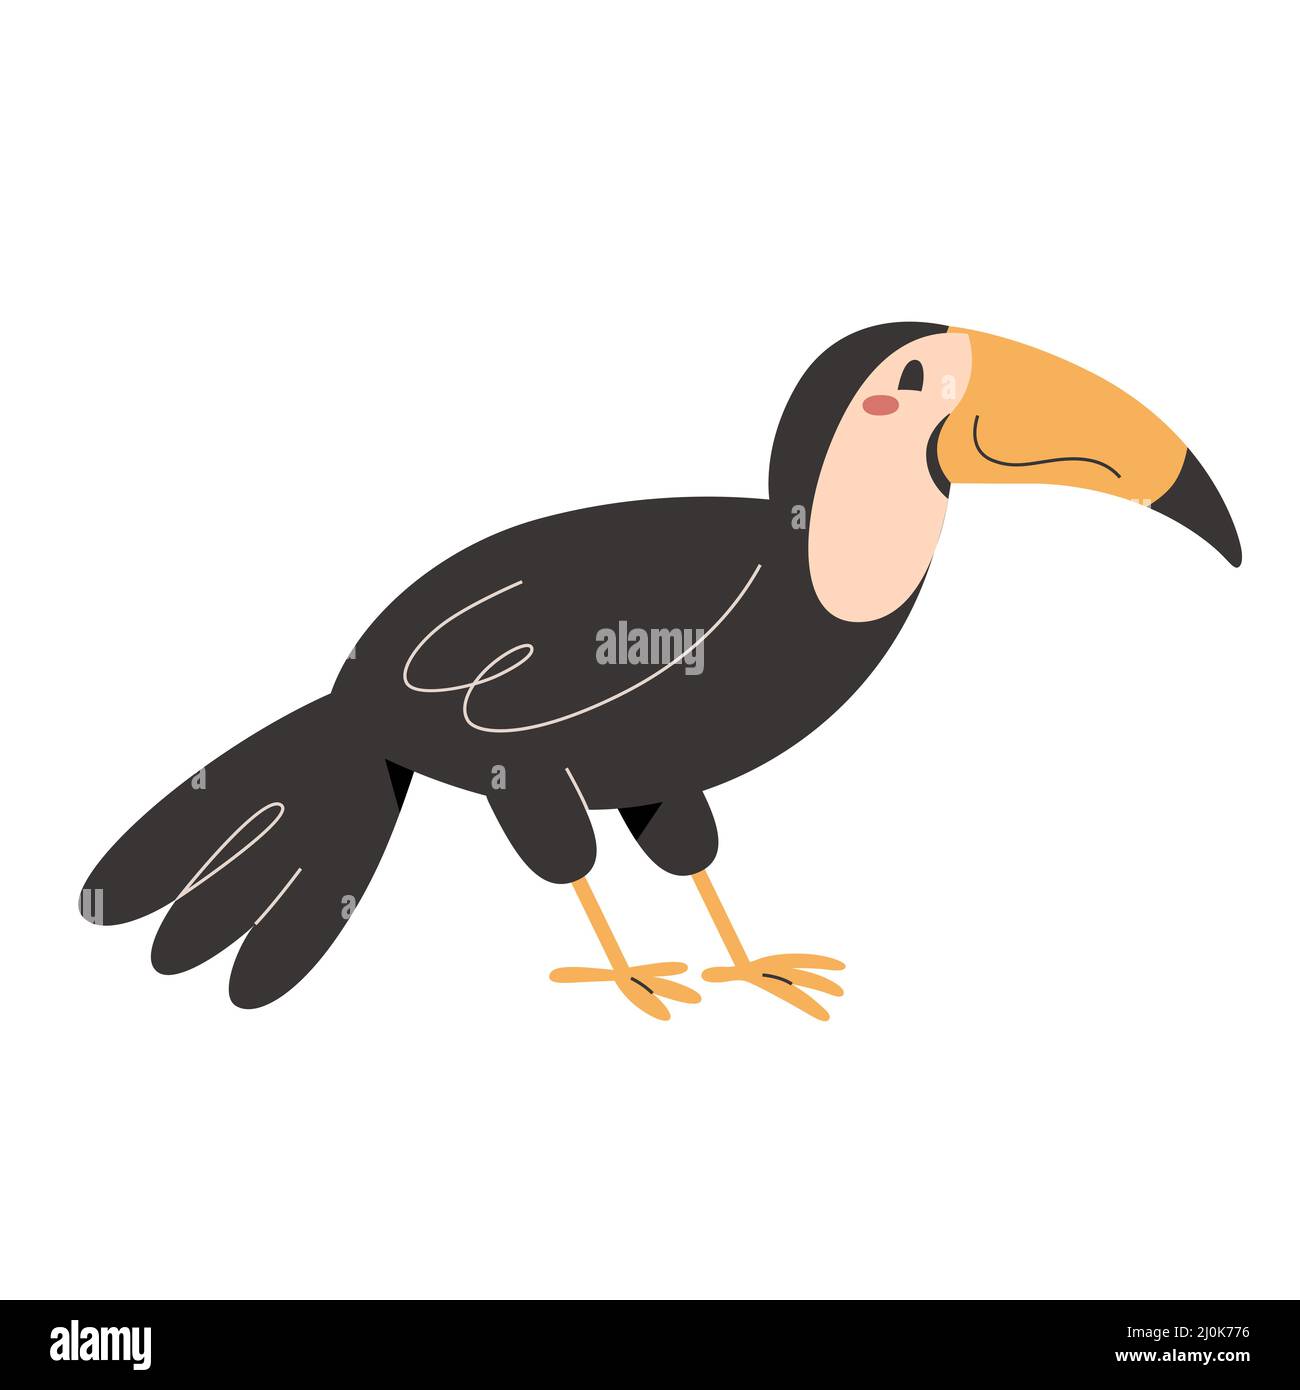 Simpatico uccello toucan con sorriso ed espressione facciale, animale selvatico esotico, illustrazione vettoriale isolata Illustrazione Vettoriale